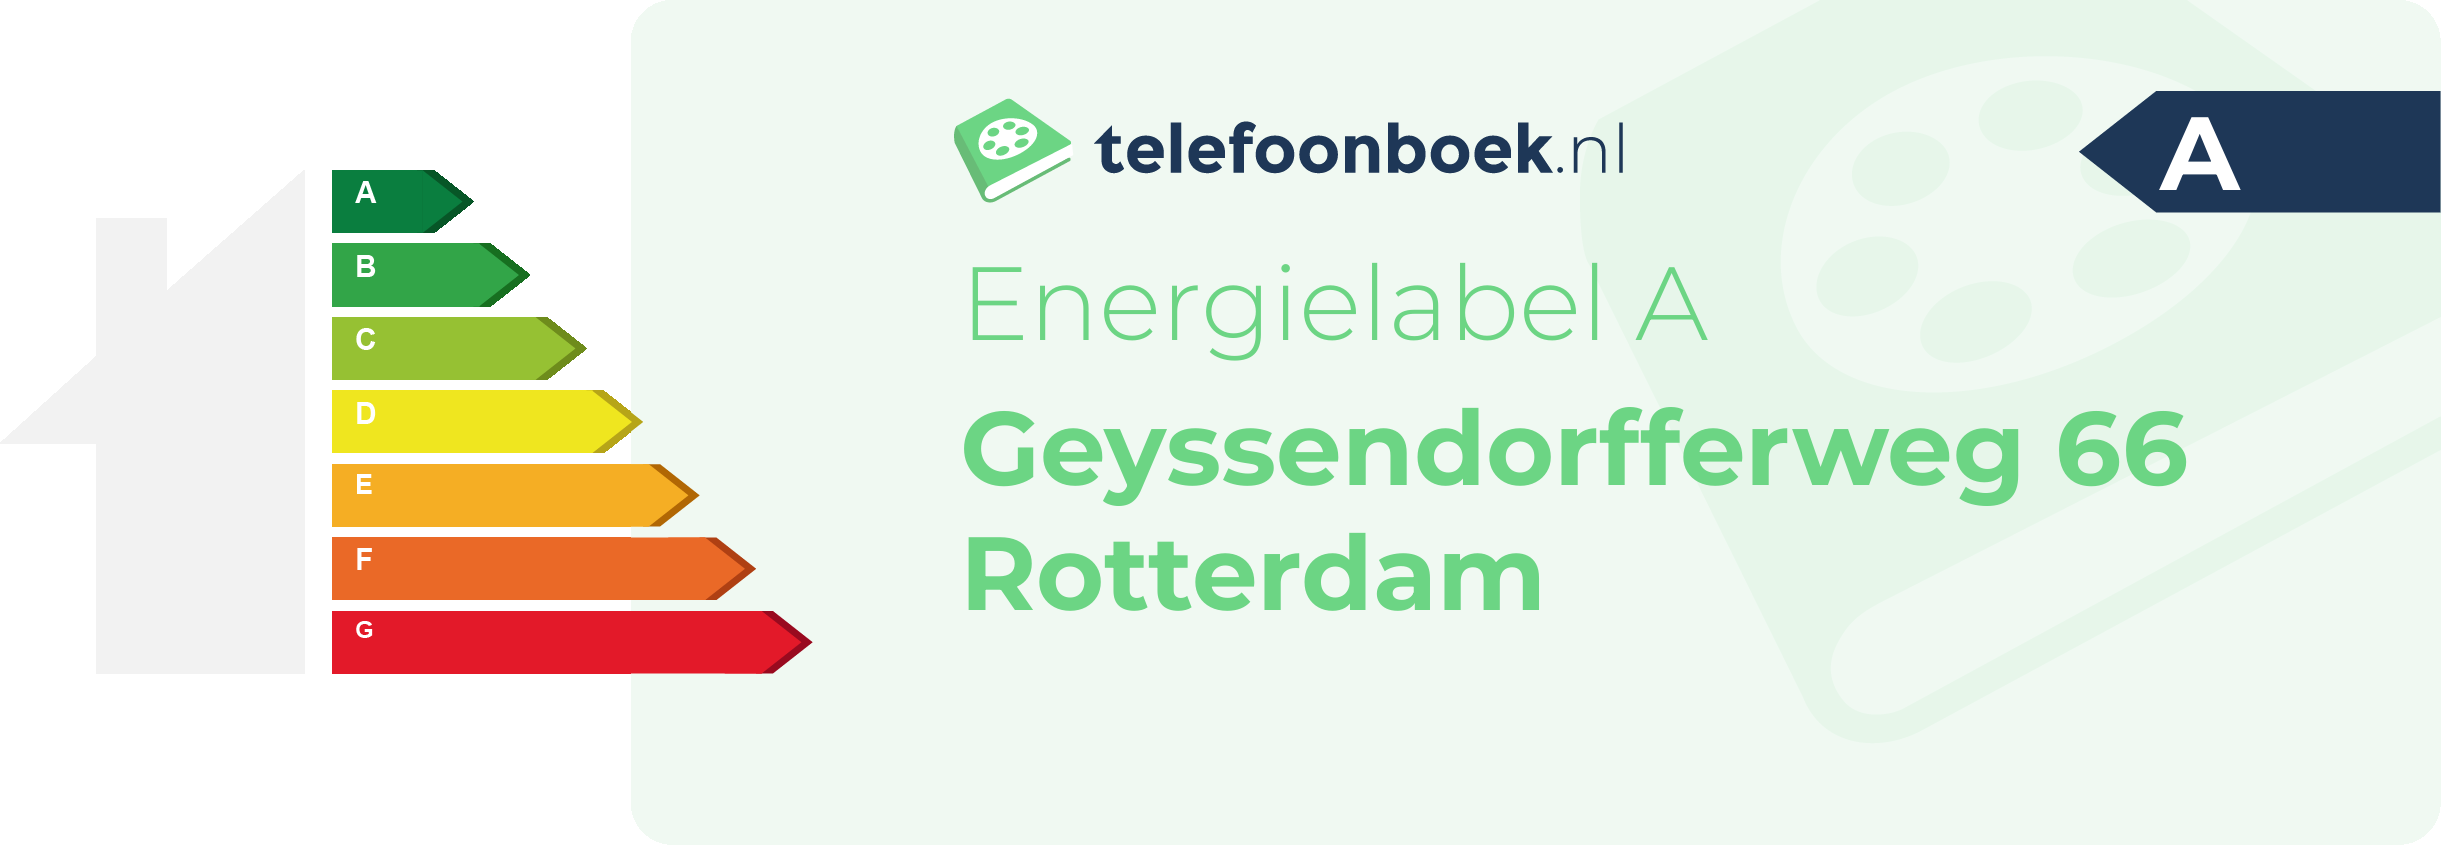 Energielabel Geyssendorfferweg 66 Rotterdam